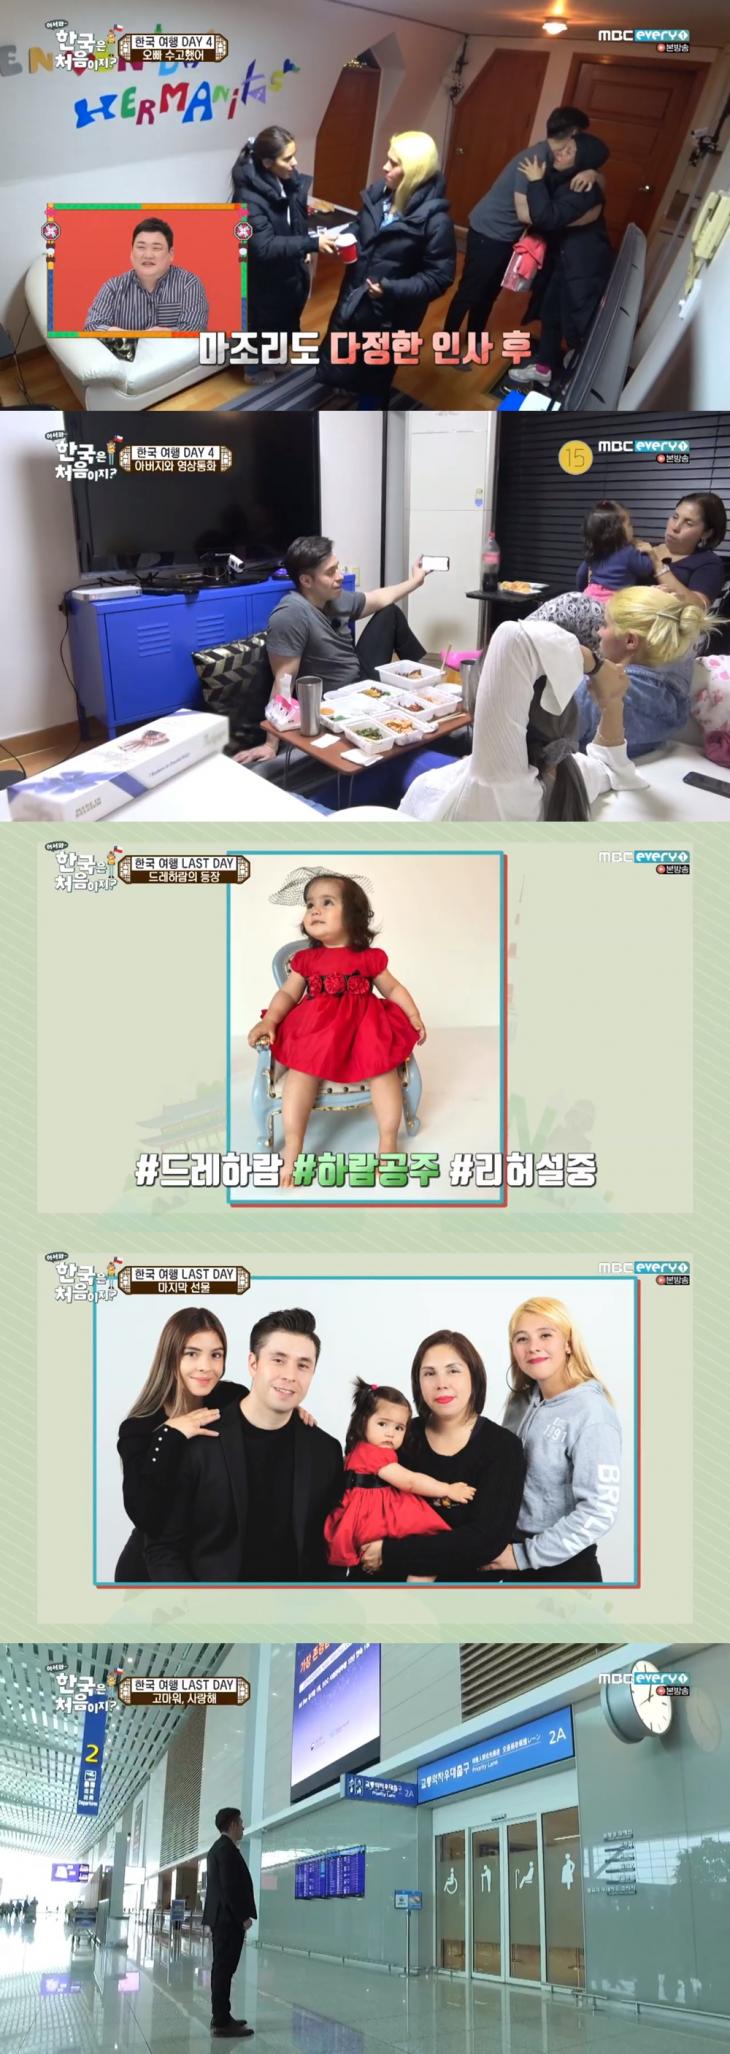 MBC 에브리원 '어서와 한국은 처음이지' 방송 캡쳐